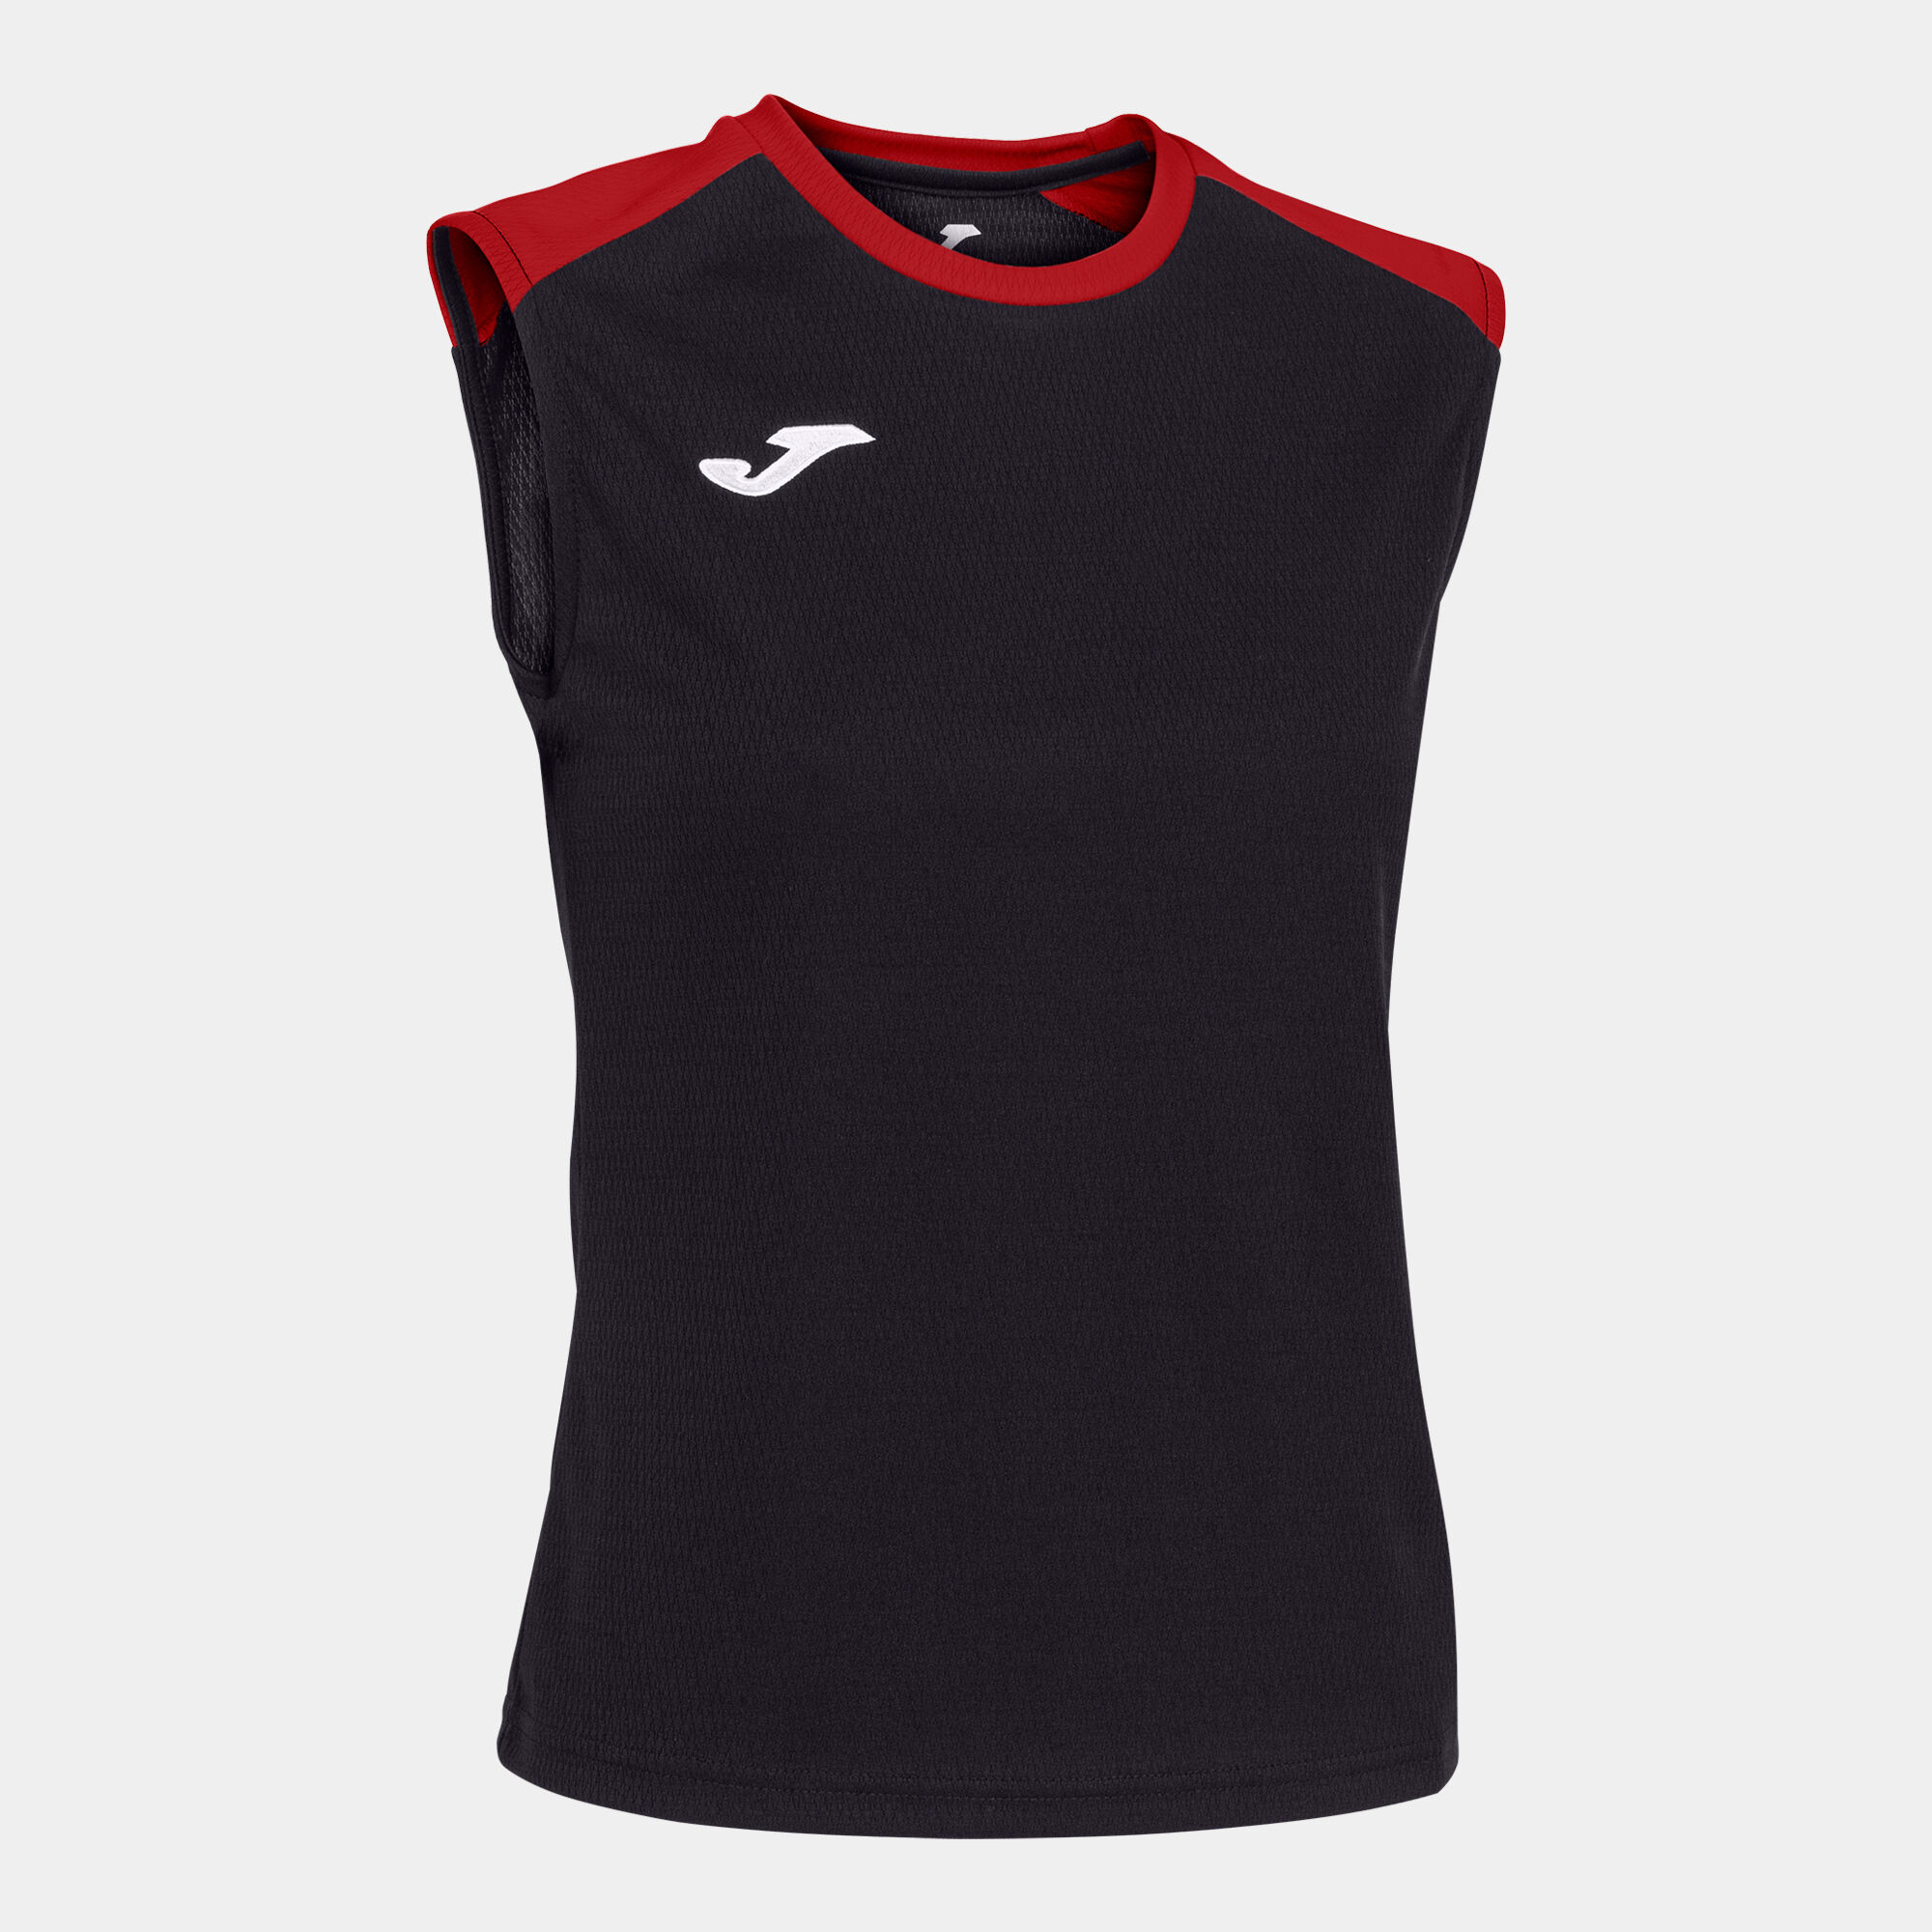 Schulterriemen-shirt frau Eco Championship schwarz rot